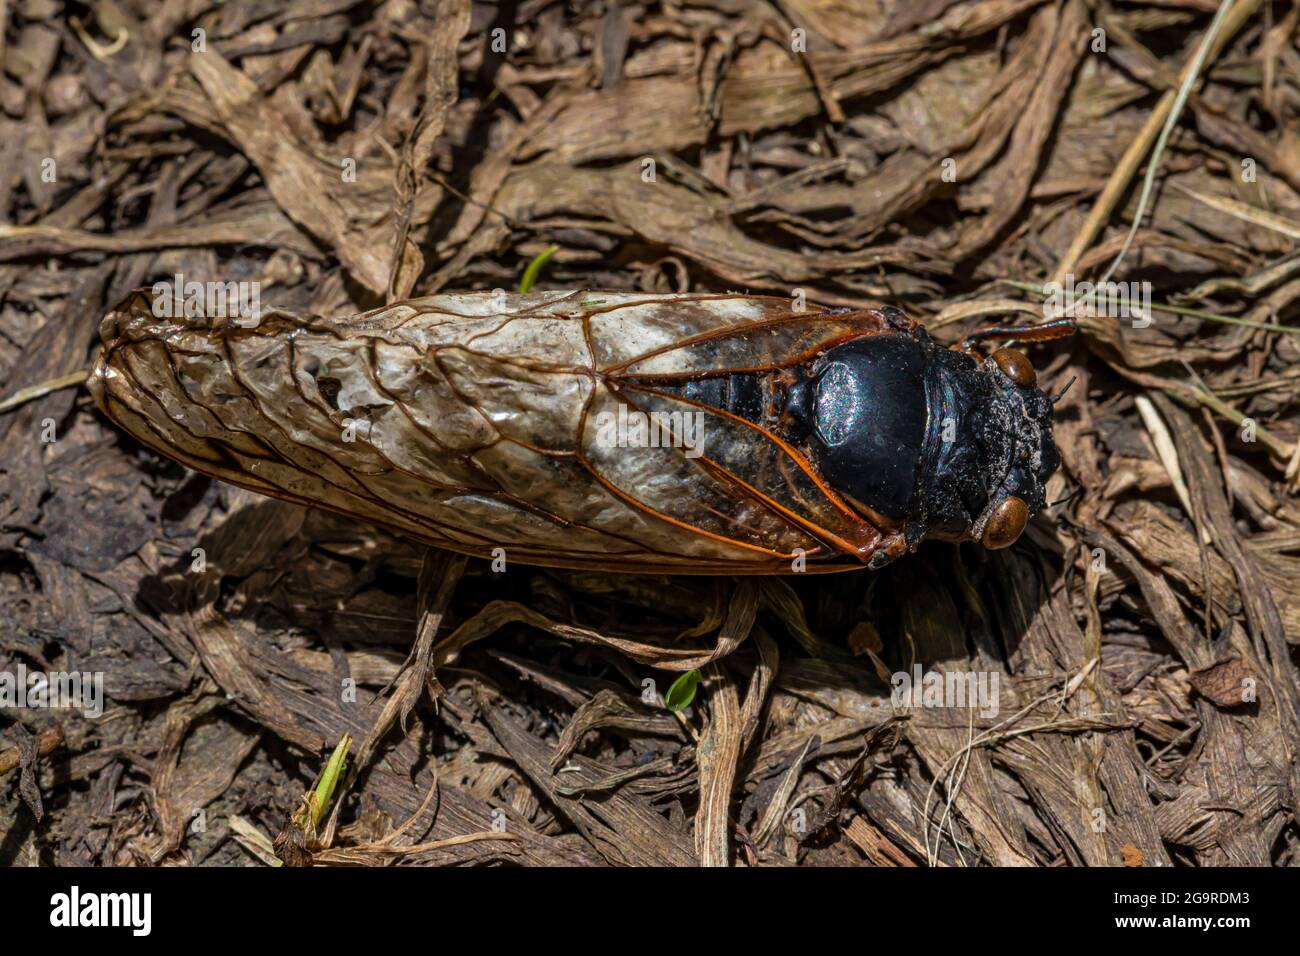 Brood X, une Cicada de 17 ans, Magicicada sp., est apparue en juin 2021 dans la réserve naturelle de Cherry Hill près d'Ann Arbor et Ypsilanti, Michigan, États-Unis Banque D'Images